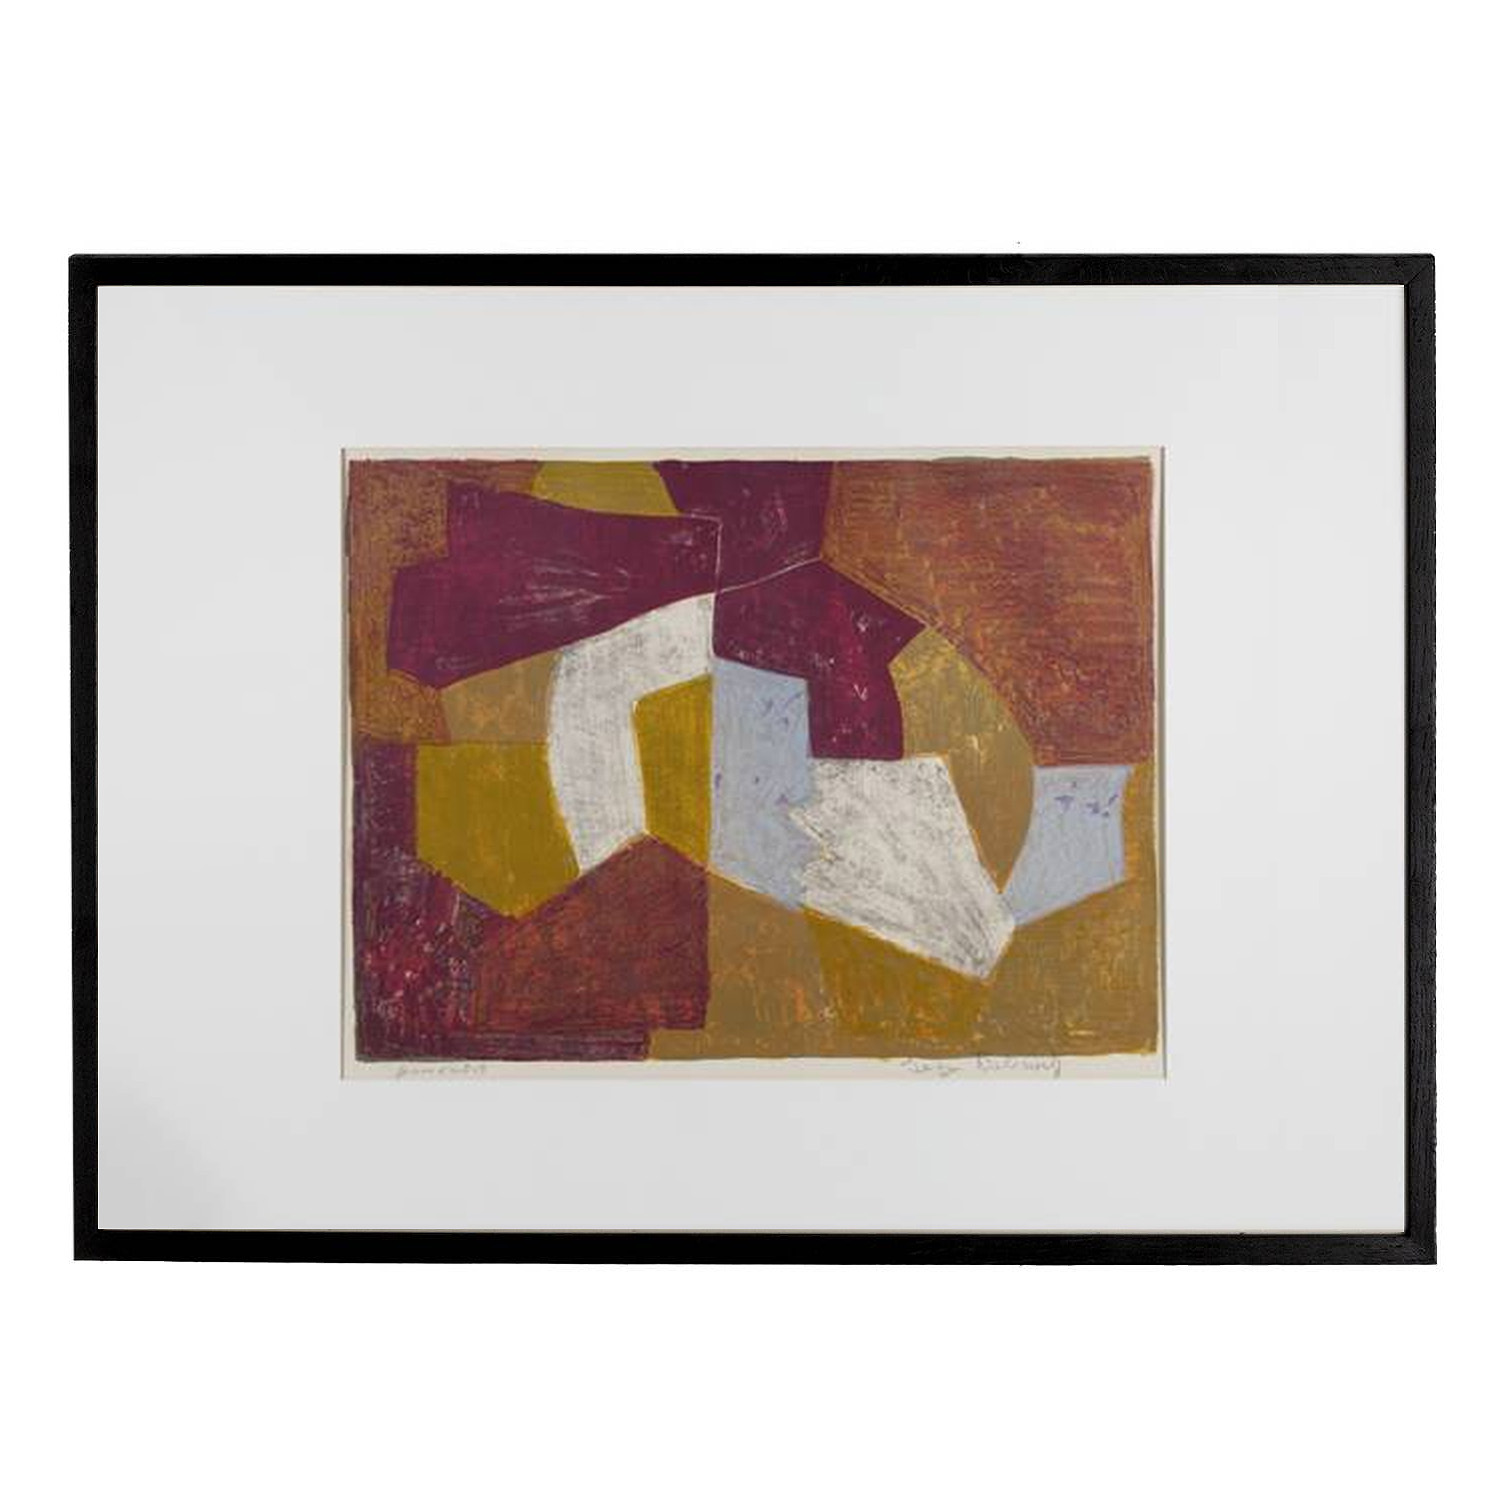 Serge Poliakoff, "Composition carmin, brune, jaune et grise", lithographie en couleurs sur papier, signée, annotée et encadrée, de 1956 - 00pp